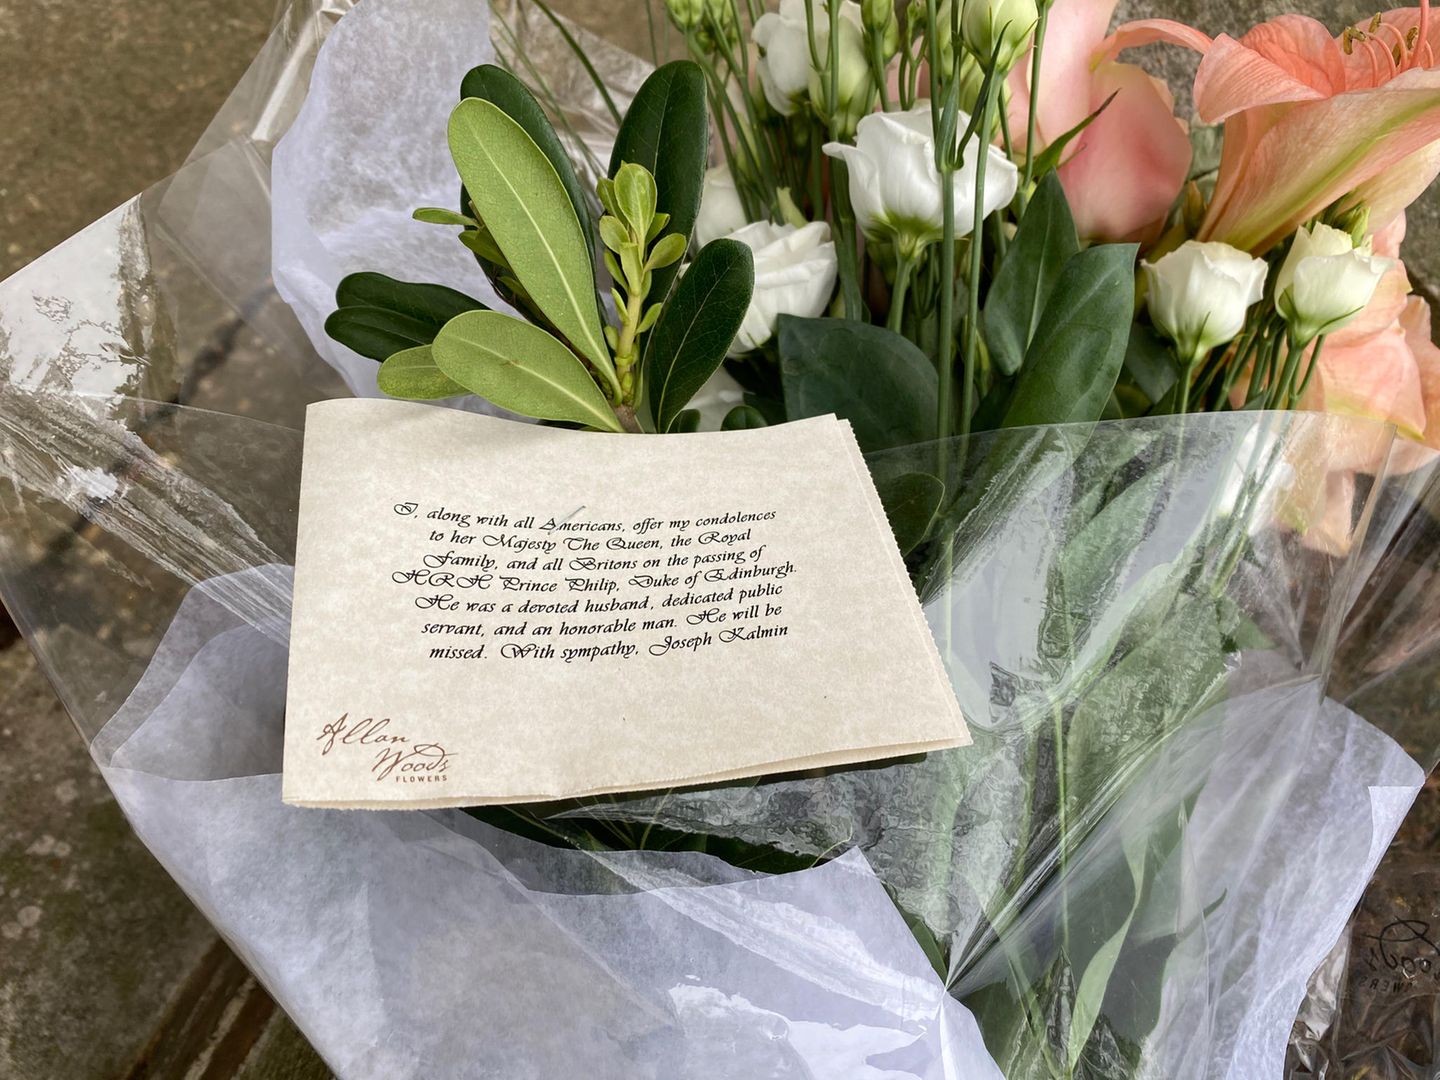 Vor der britischen Botschaft in Washington D.C. gedenkt ein Trauernder dem gestorbenen Prinz Philip – legt Blumen und einen Brief nieder.